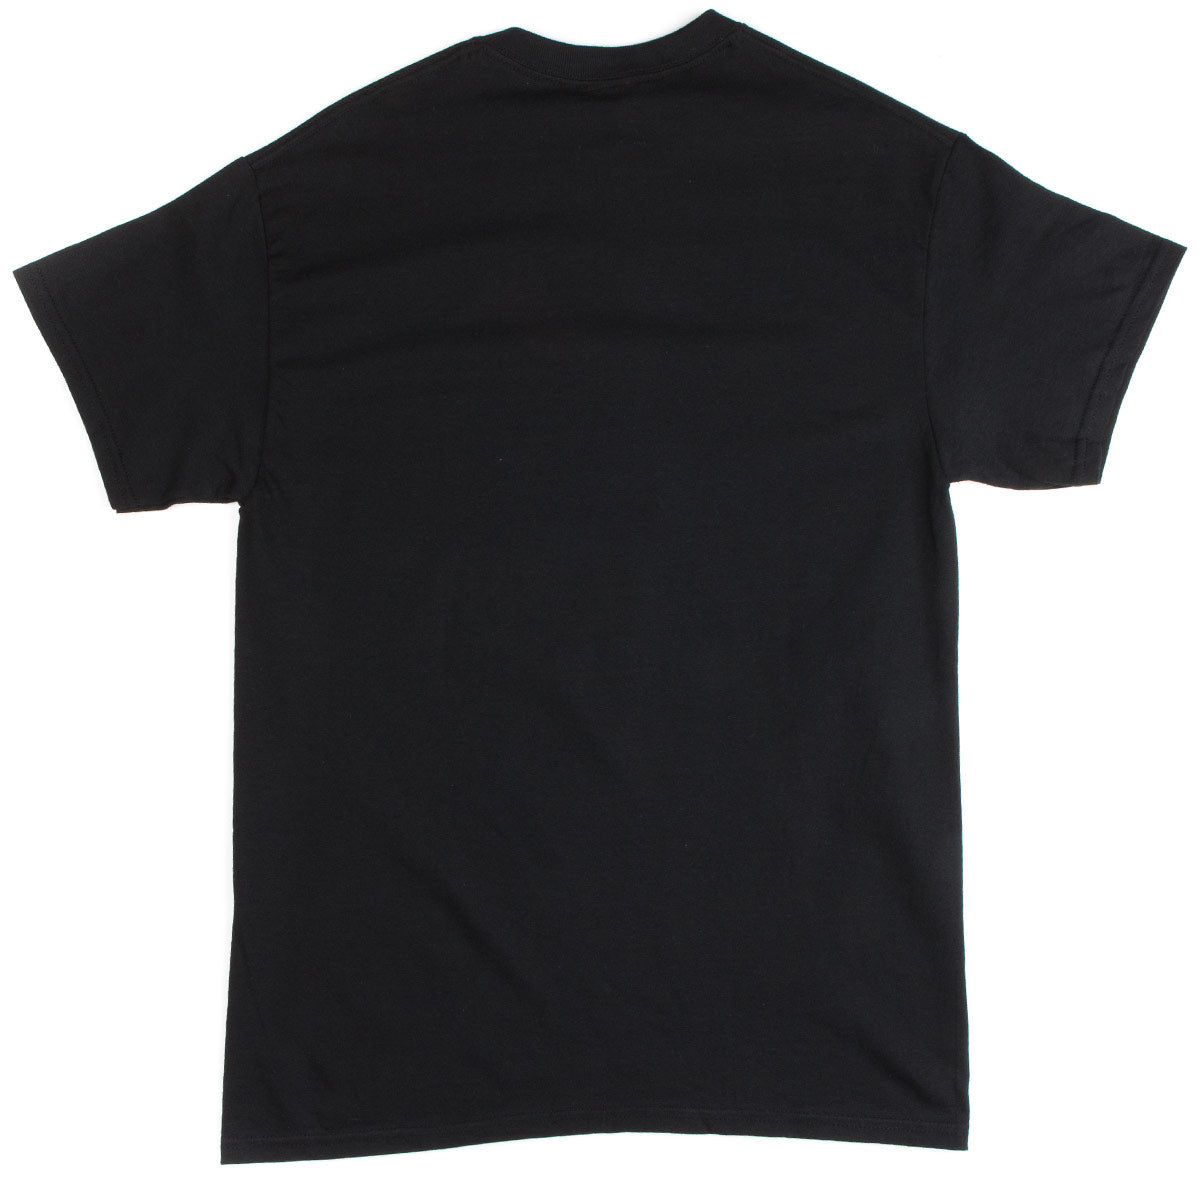 Thrasher Skate Outlaw T-Shirt - Black image 2